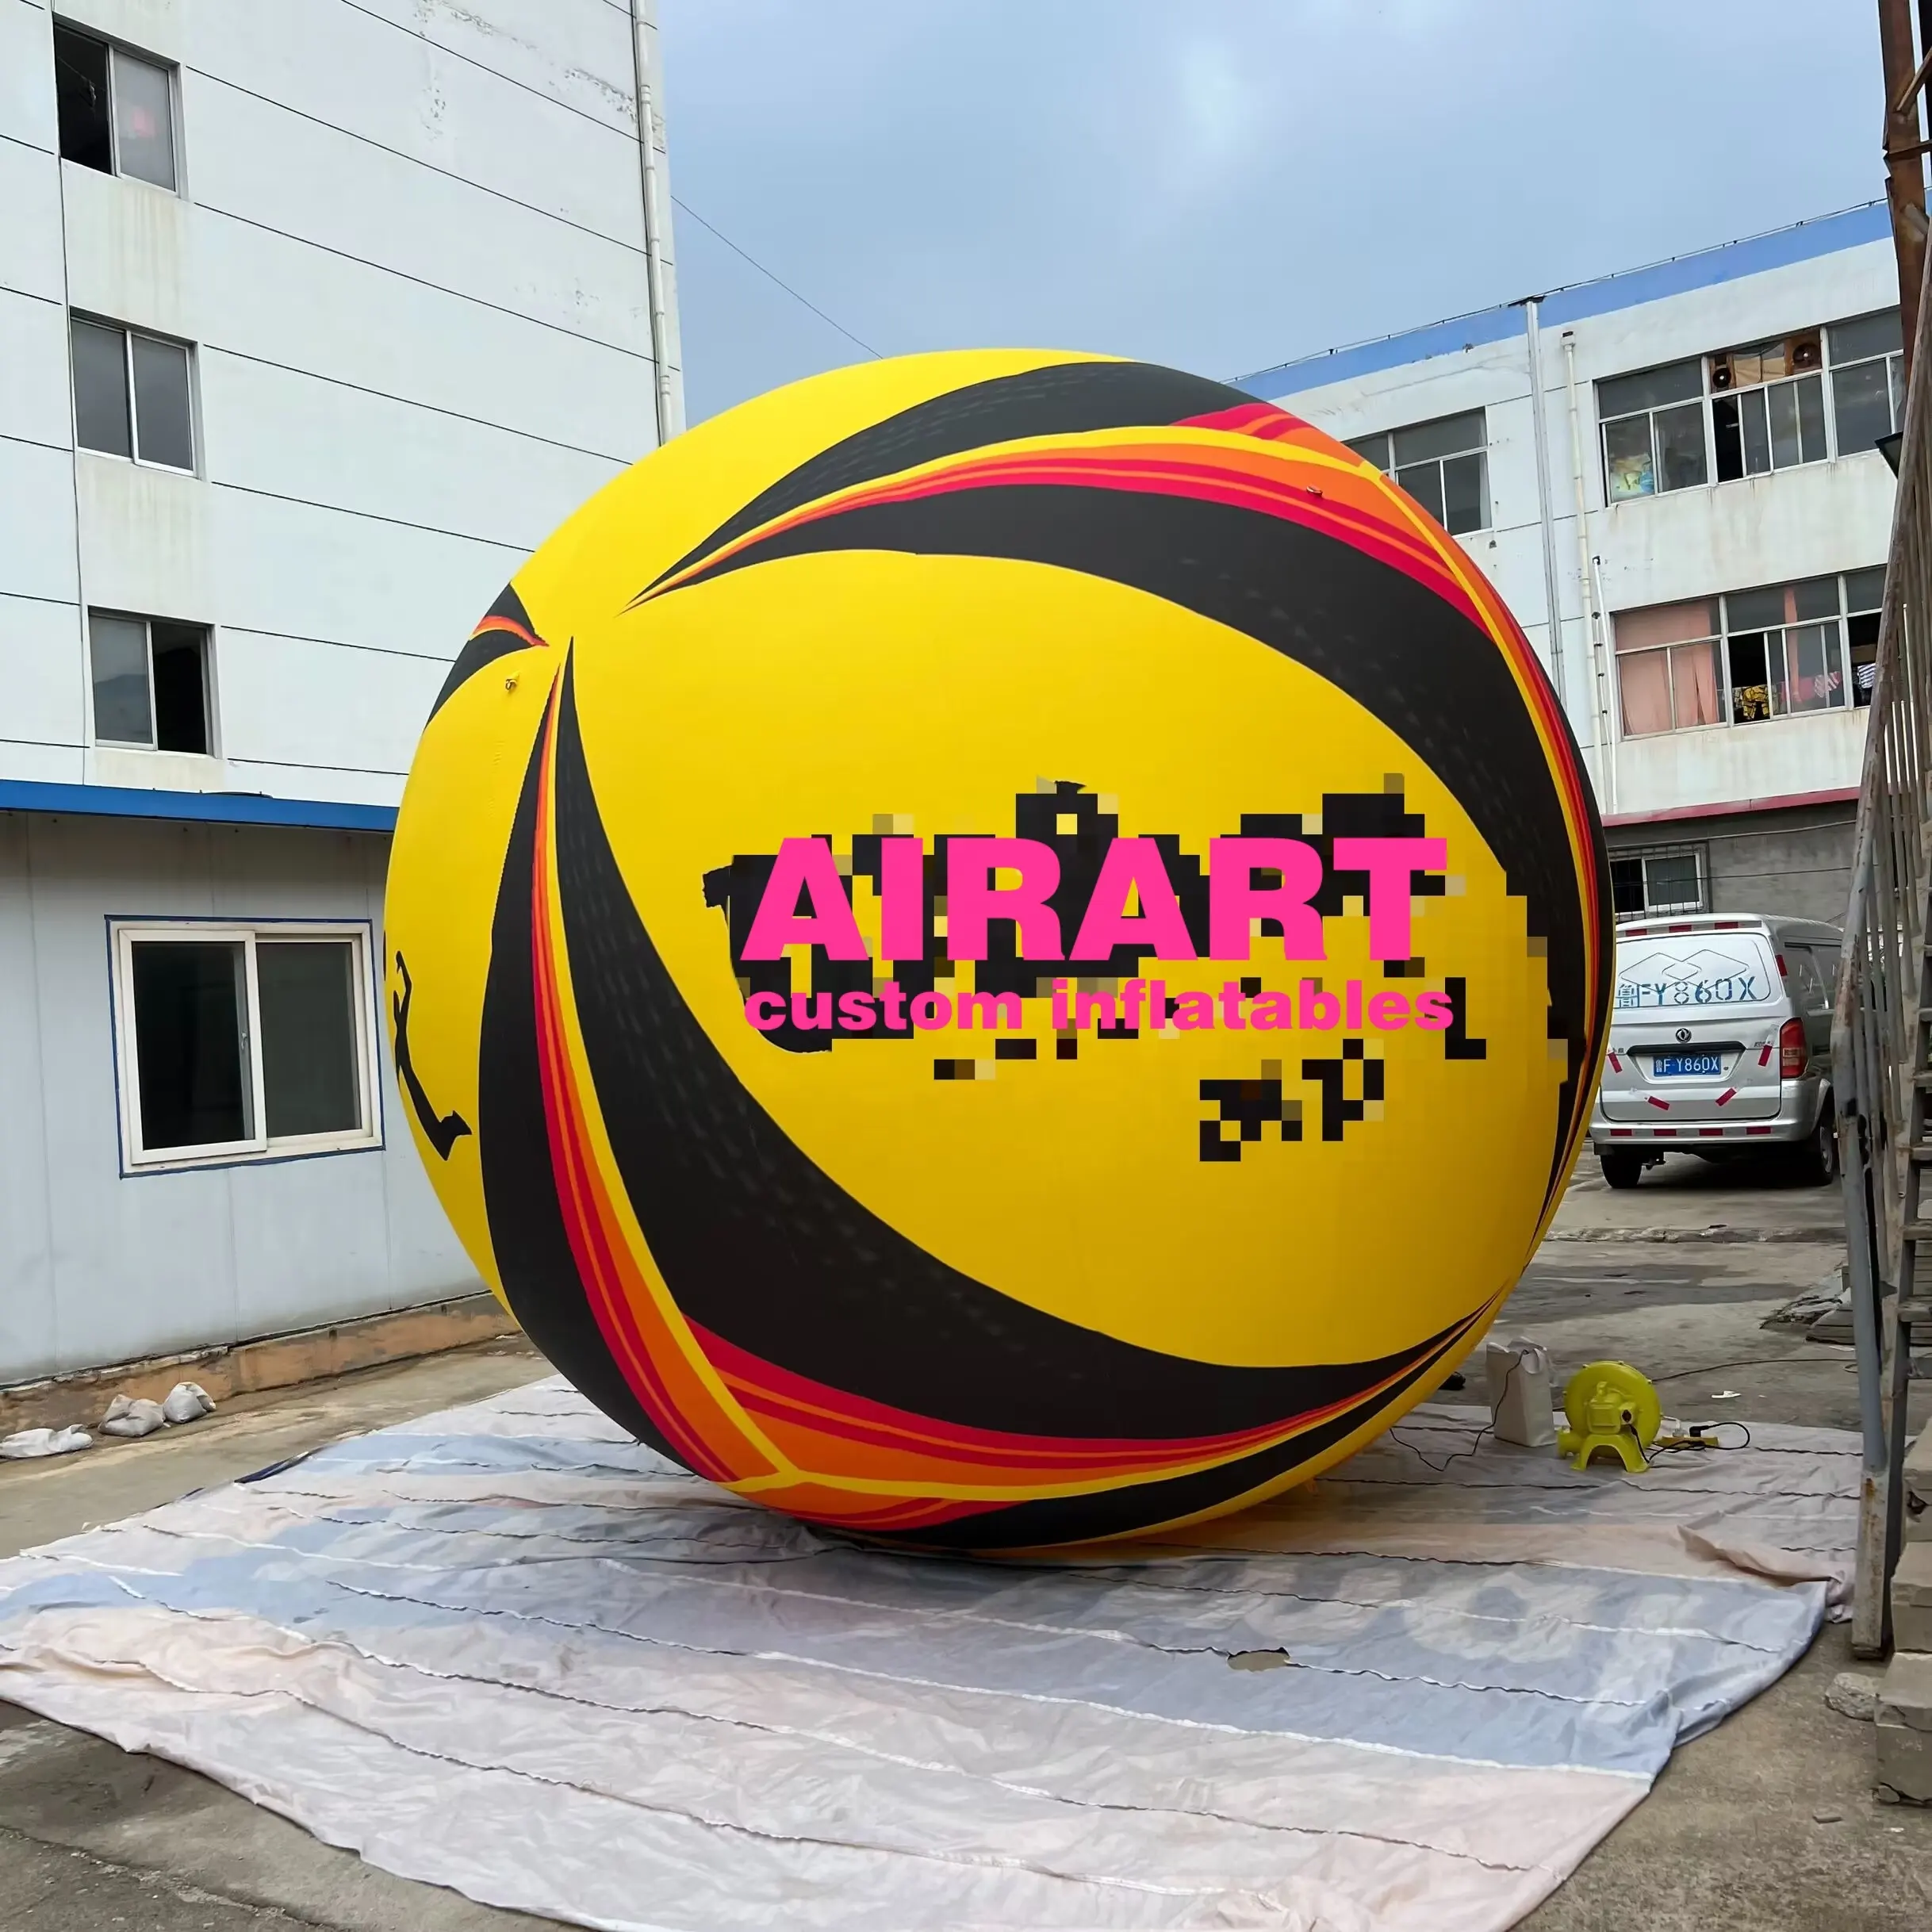 Pelota de voleibol gigante inflable para decoración publicitaria de eventos deportivos